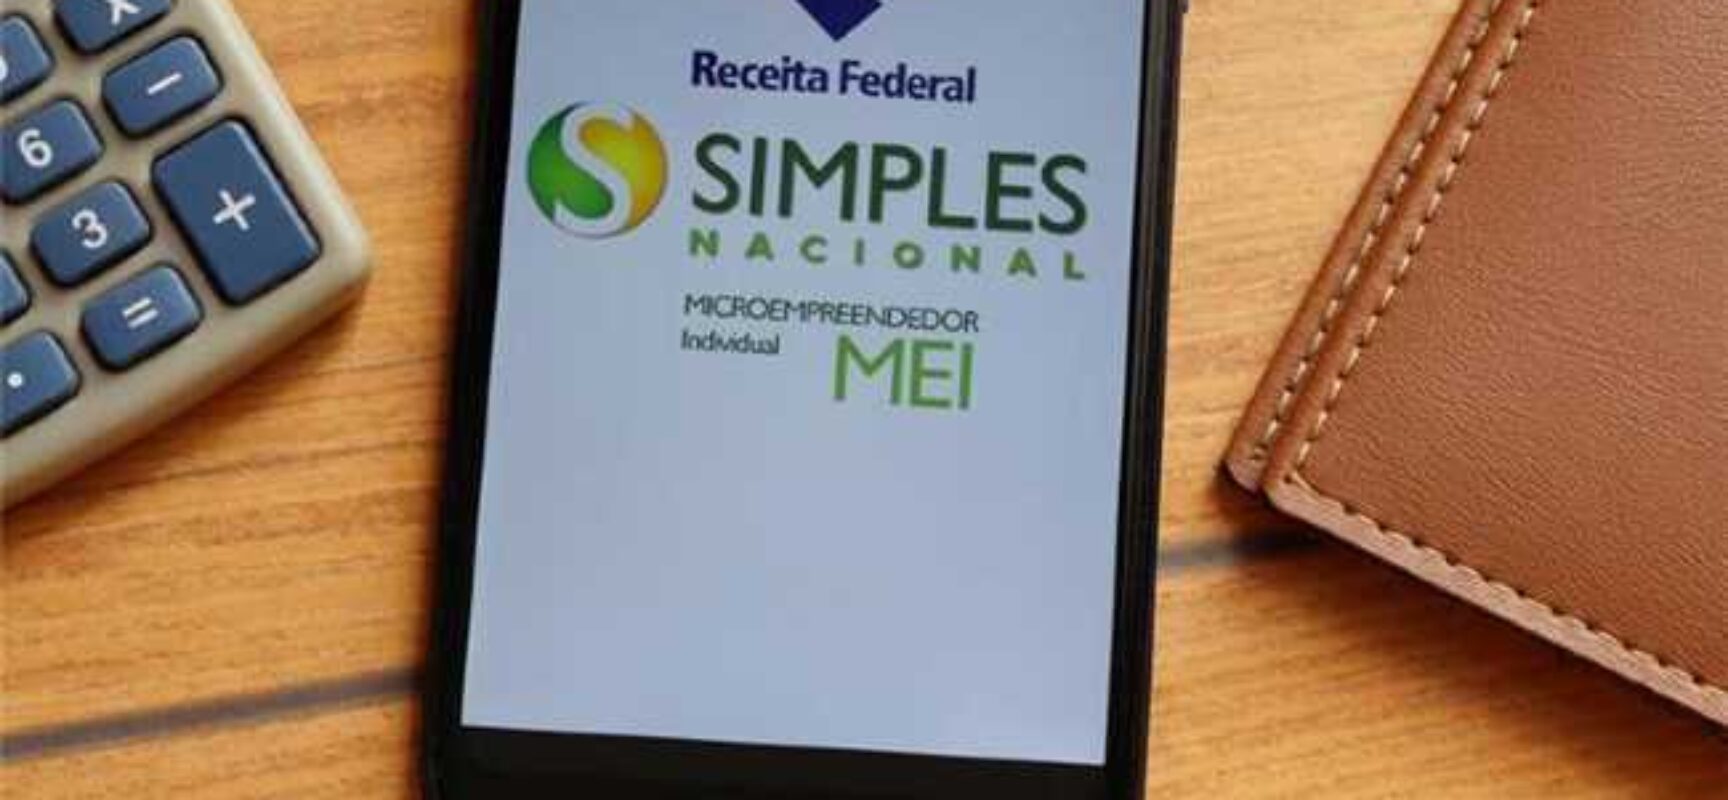 Comunicado: prorrogado início da obrigatoriedade de emissão de nota fiscal eletrônica para MEIs